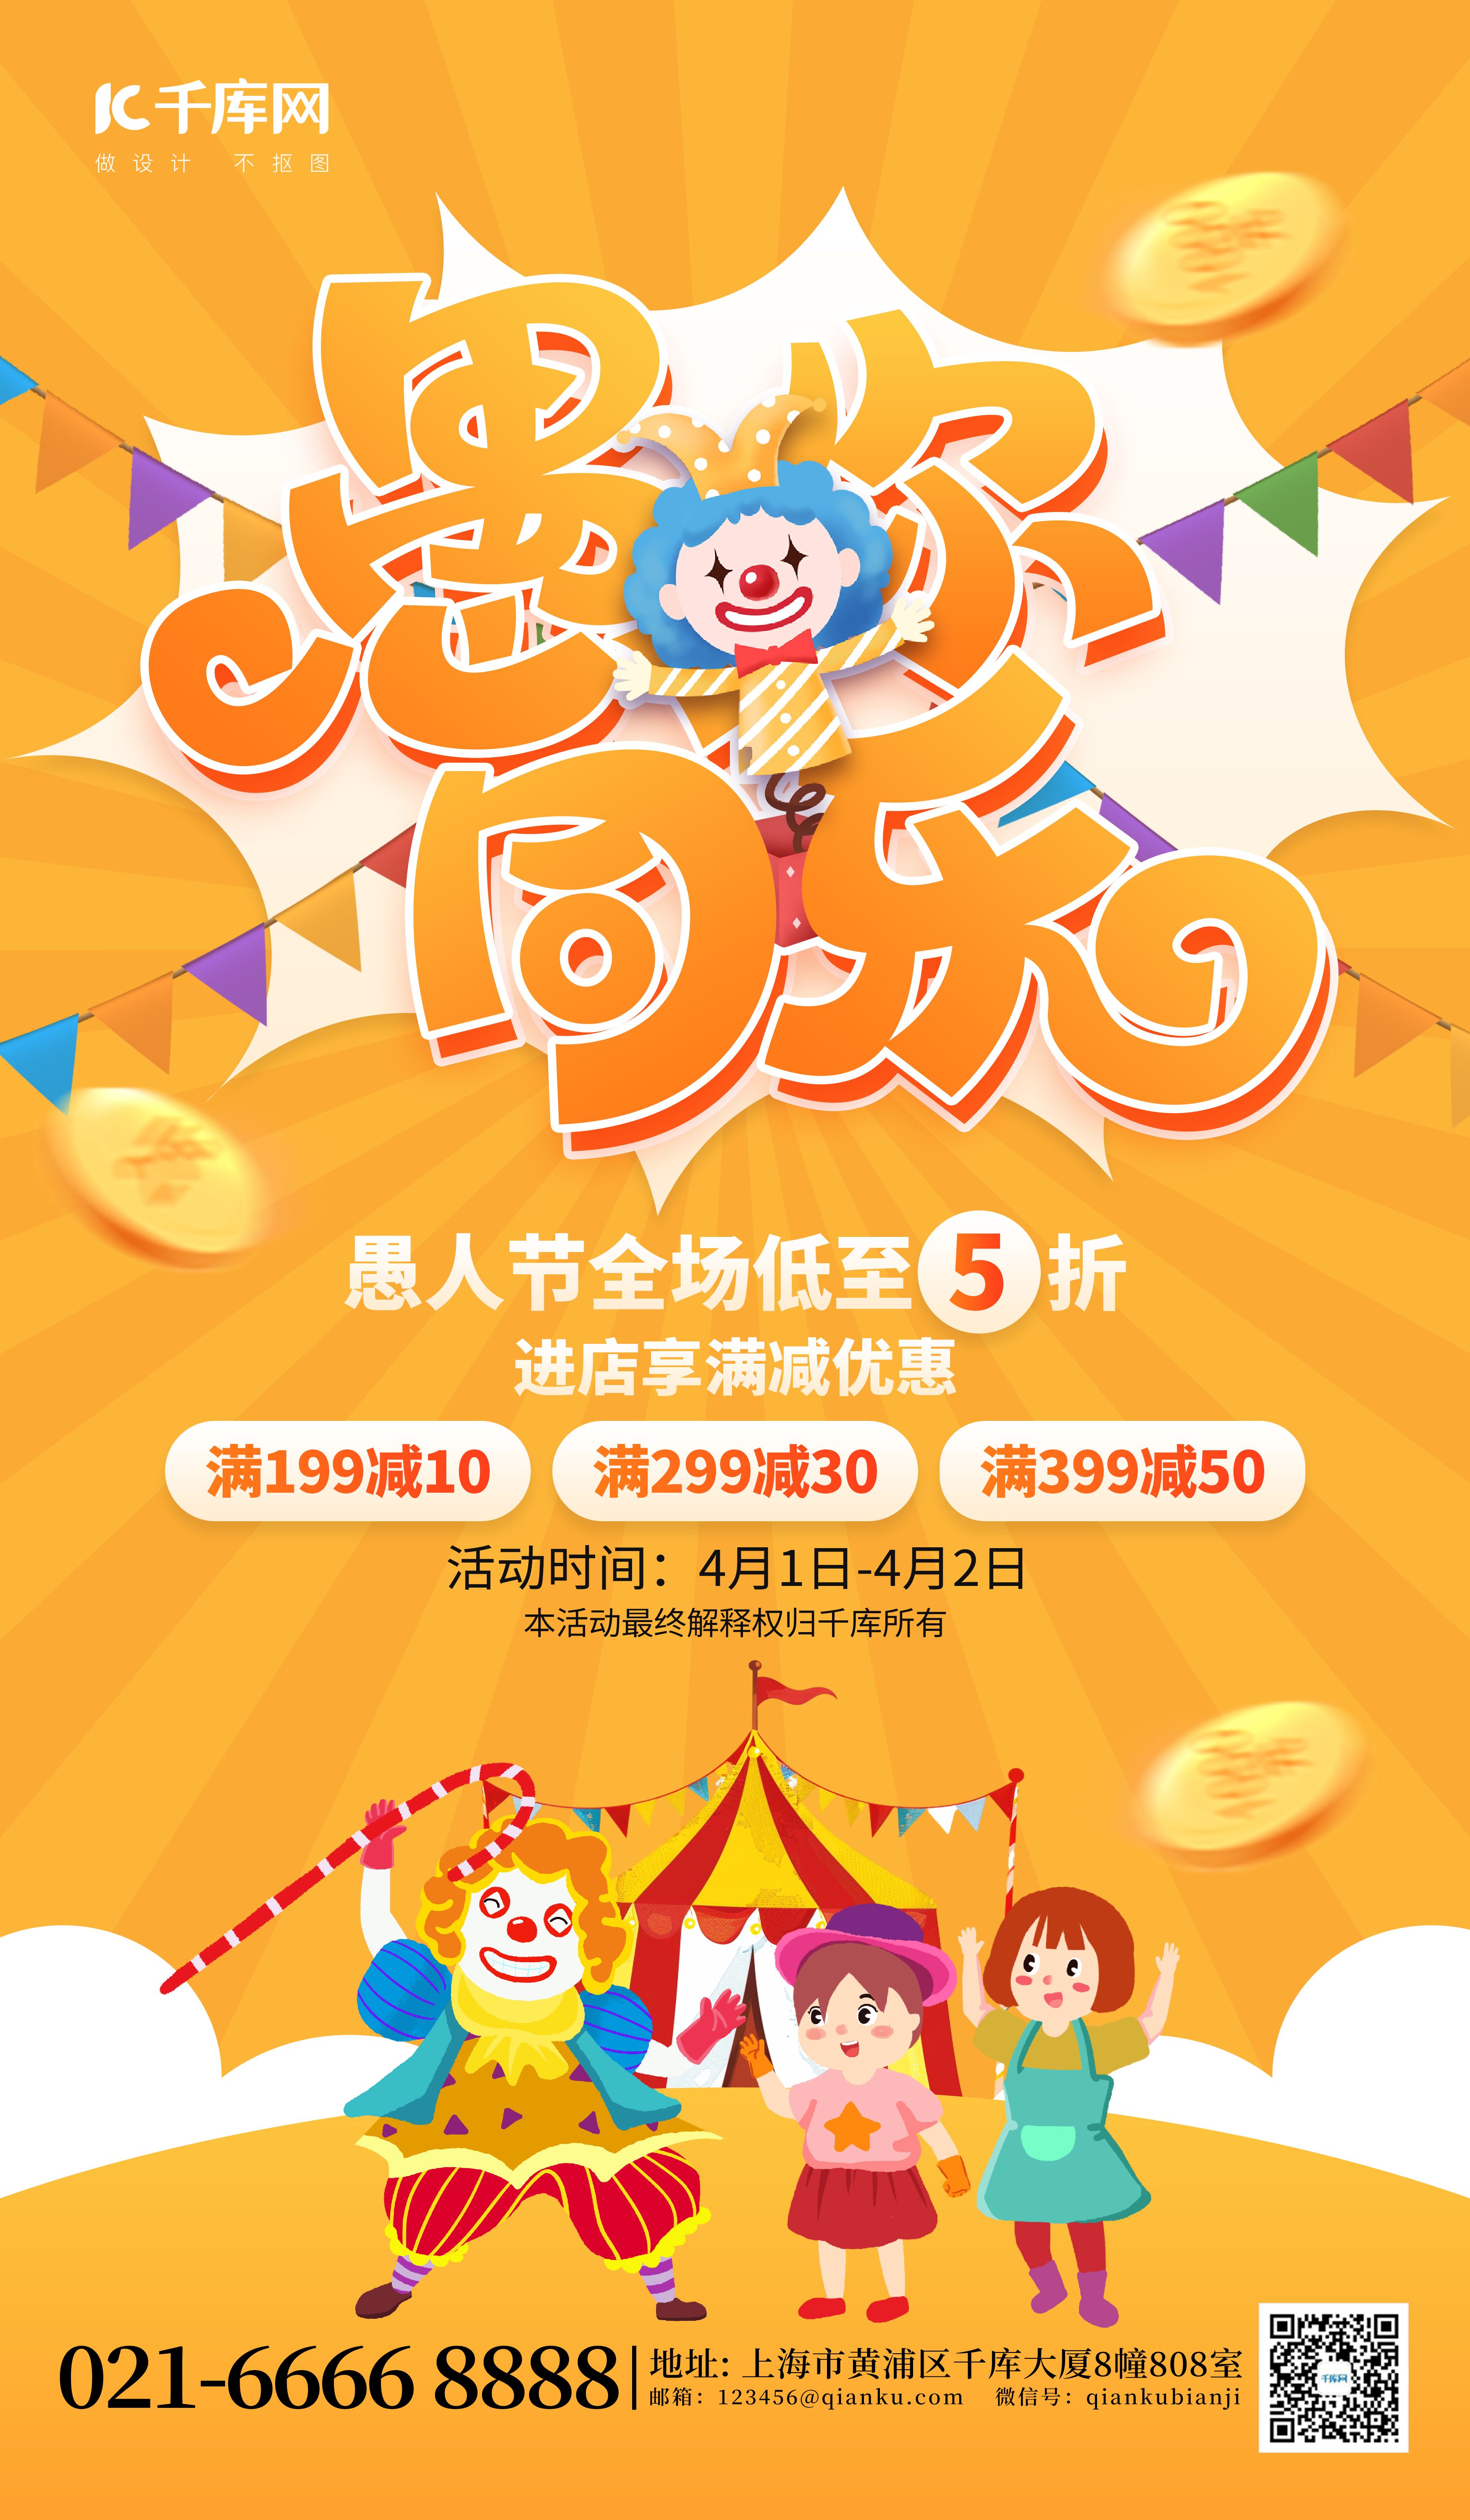 愚人节促销活动小丑马戏橙黄色创意海报图片